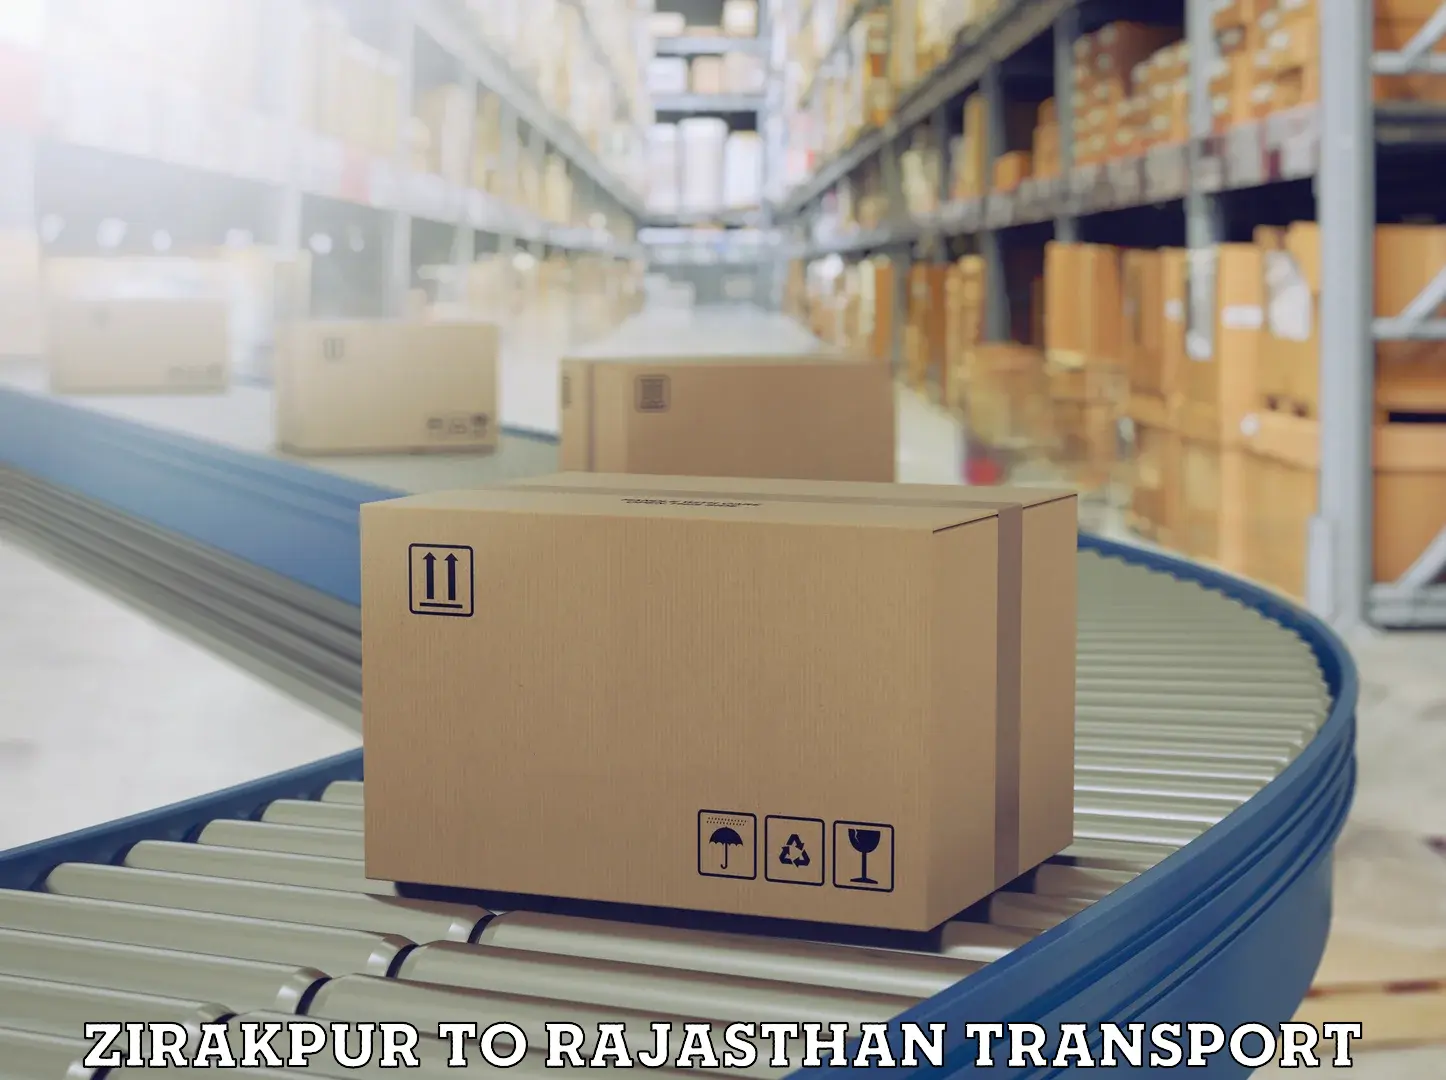 Lorry transport service Zirakpur to Rajasthan